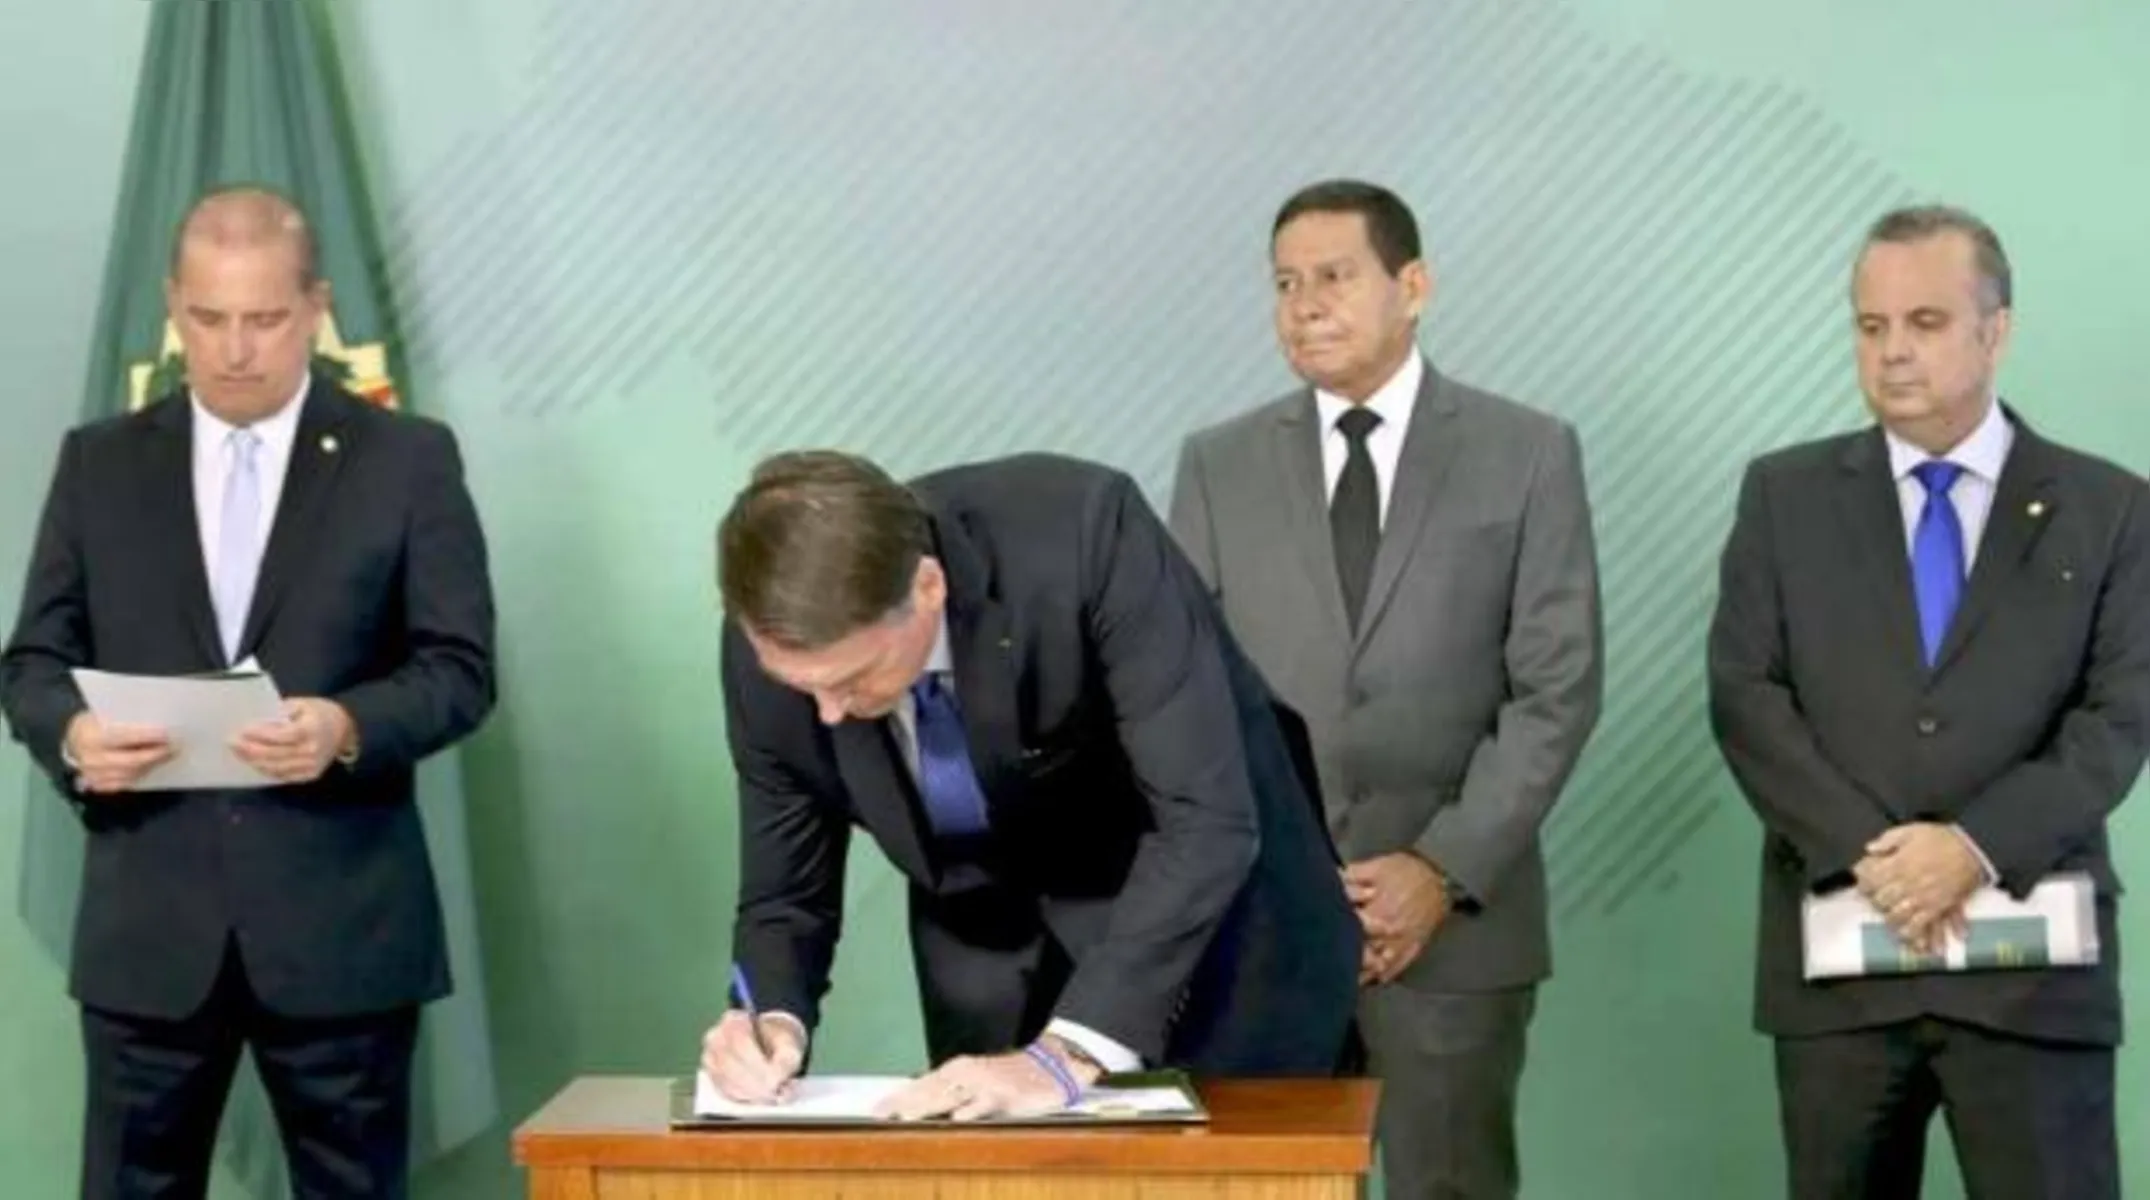 A assinatura da MP ocorre às vésperas de Bolsonaro viajar a Davos, na Suíça, onde participa do Fórum Econômico Mundial